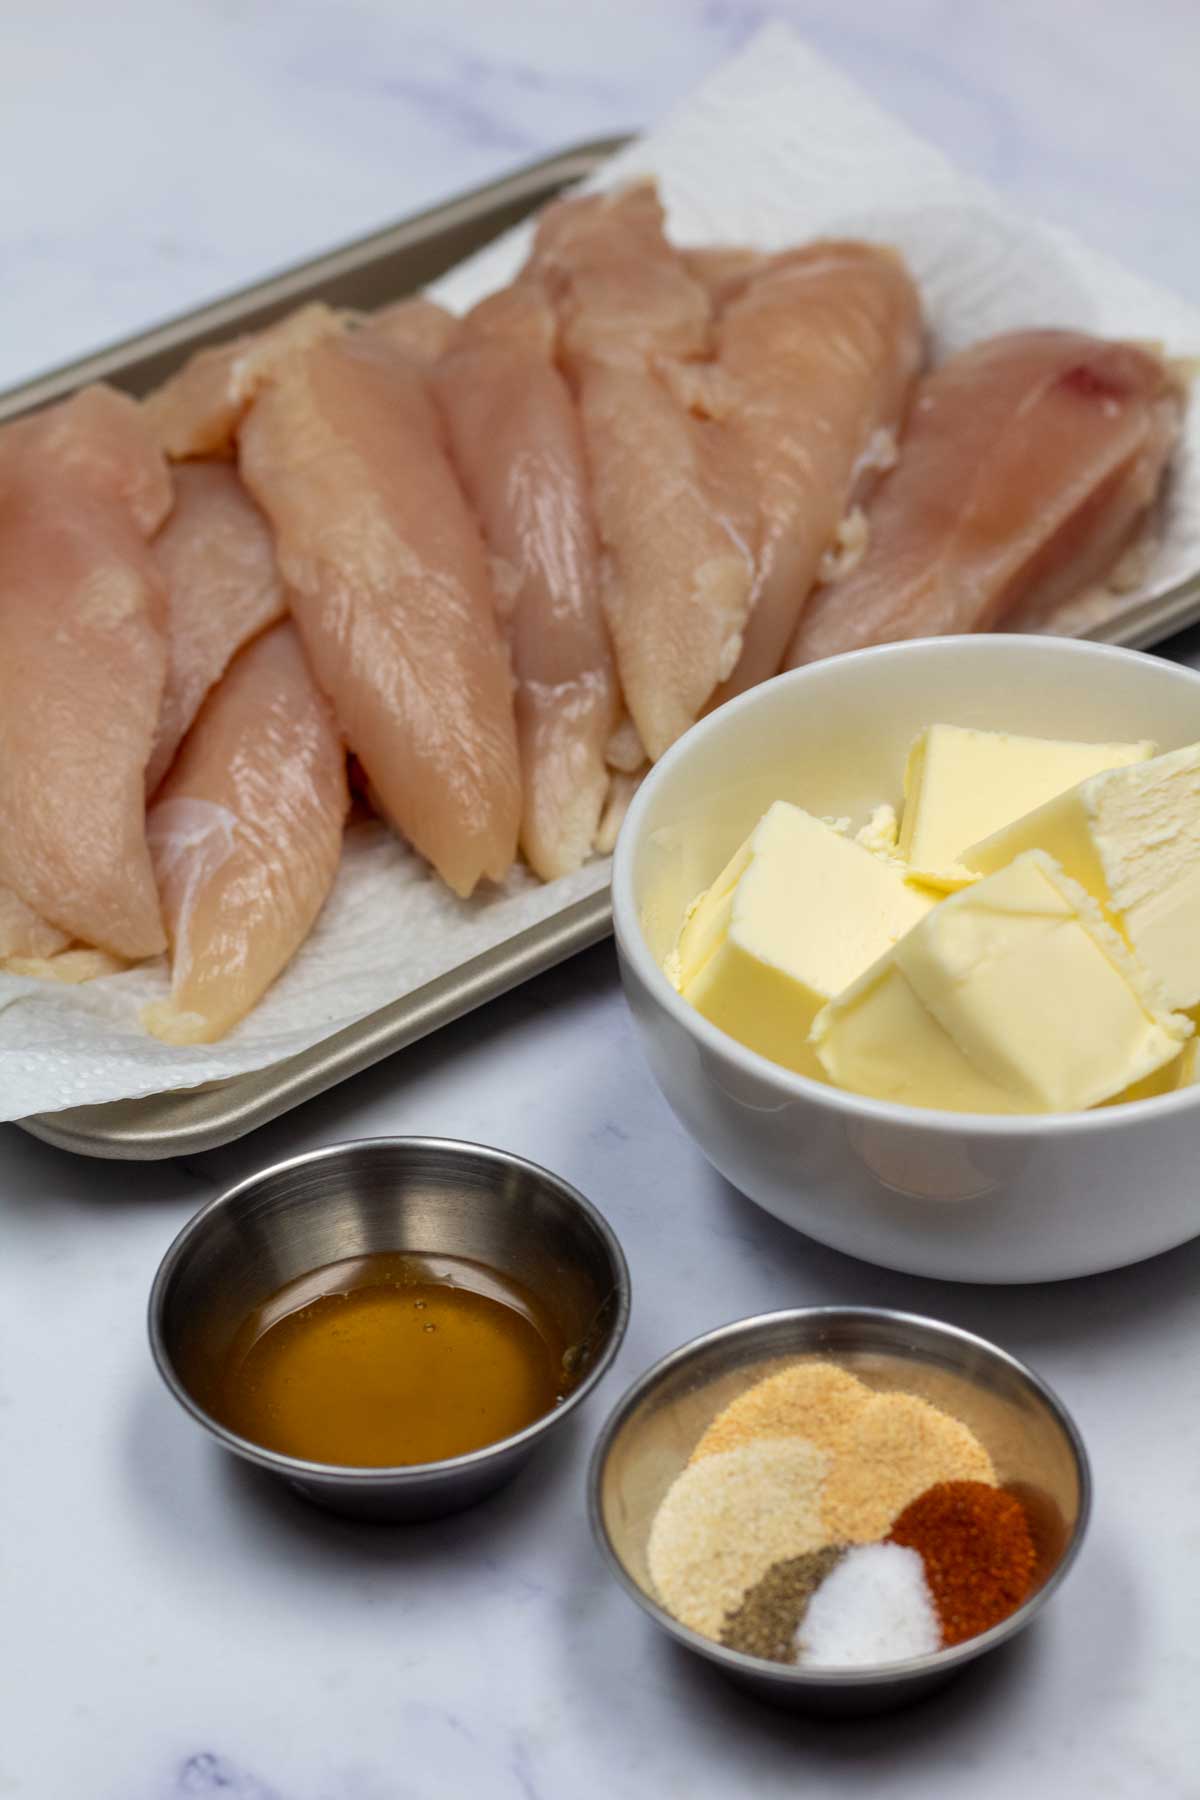 Immagine alta che mostra gli ingredienti per i filetti di pollo al forno.